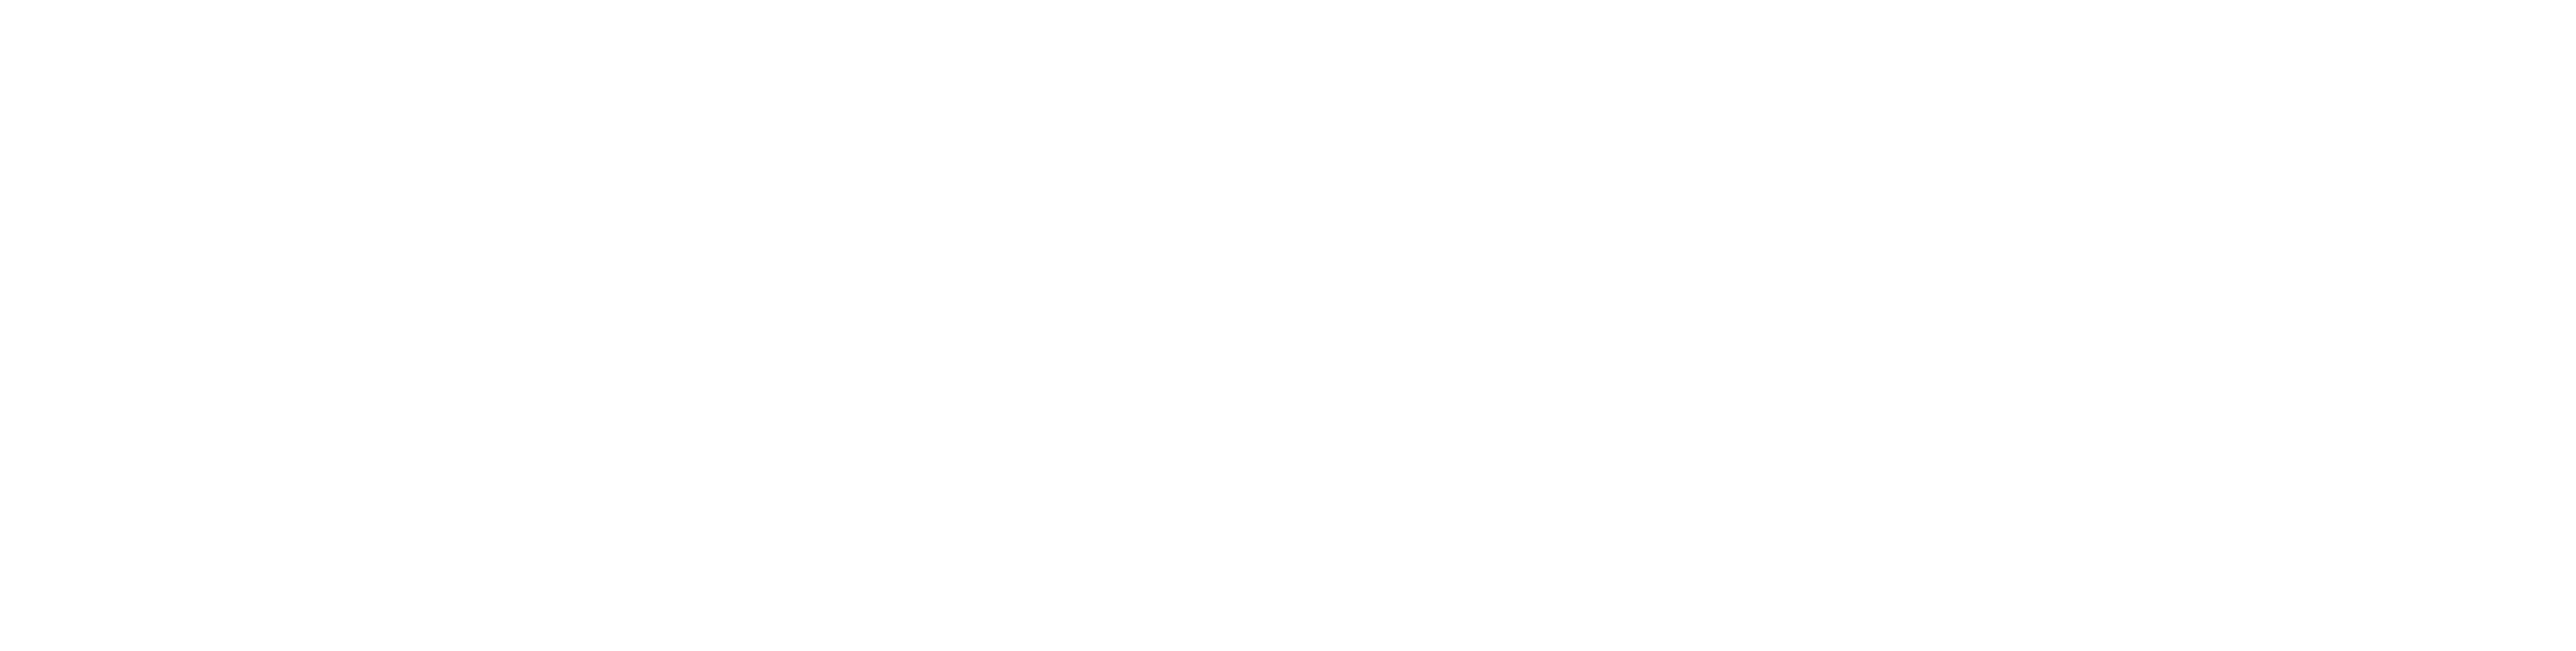 Cybervine IT Solutions | Microsoft Azure | Enterprise Solutions & Cloud Services